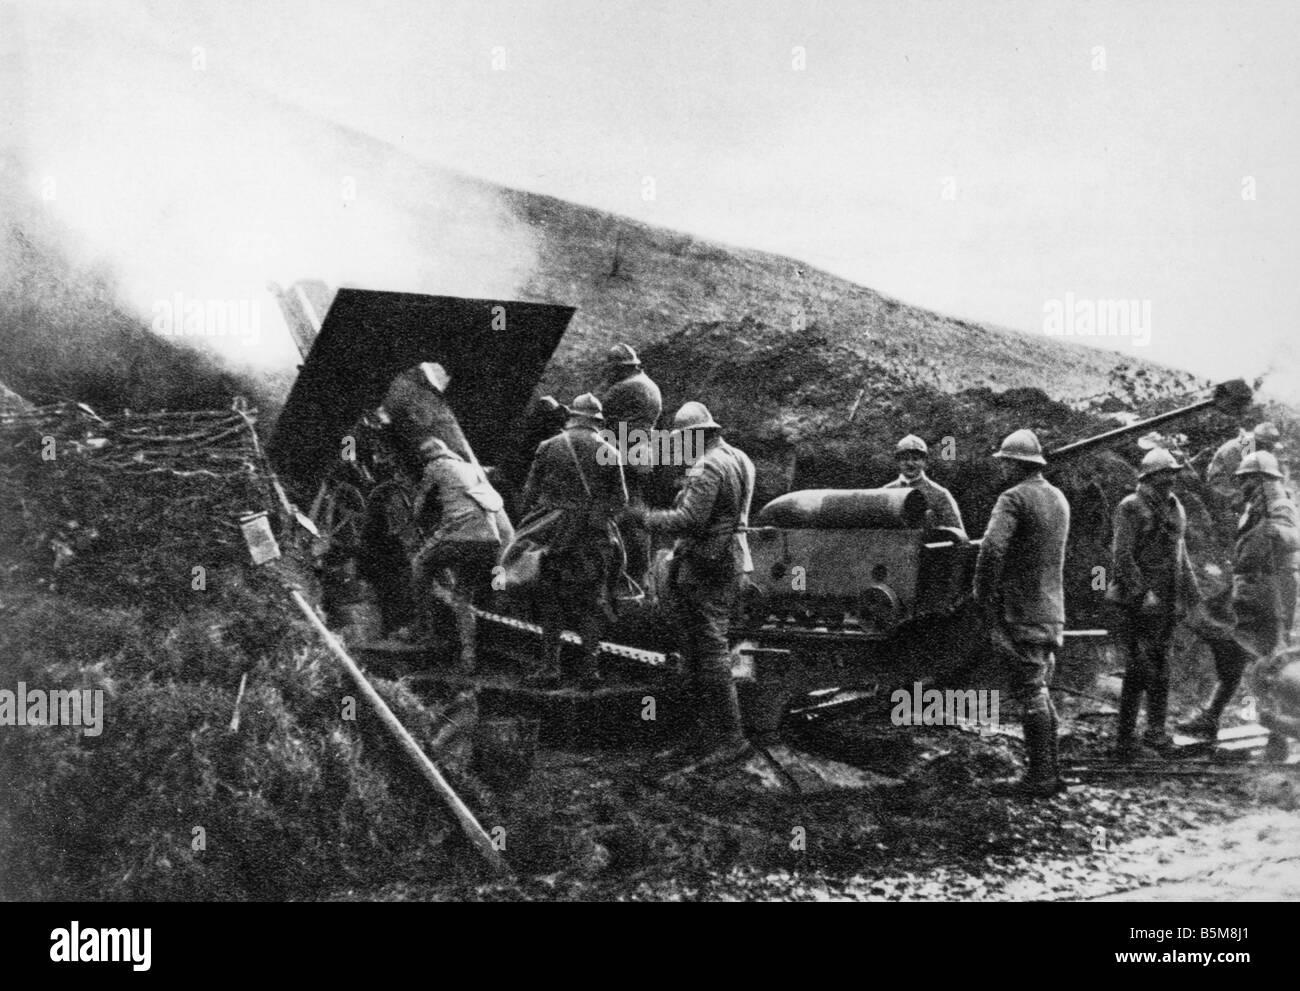 2 G55 F1 1918 7 WW1 Francia la artillería francesa 1918 Historia la Primera Guerra Mundial el francés durante la batalla a fuerza de artillería francesa Aspach Foto de stock